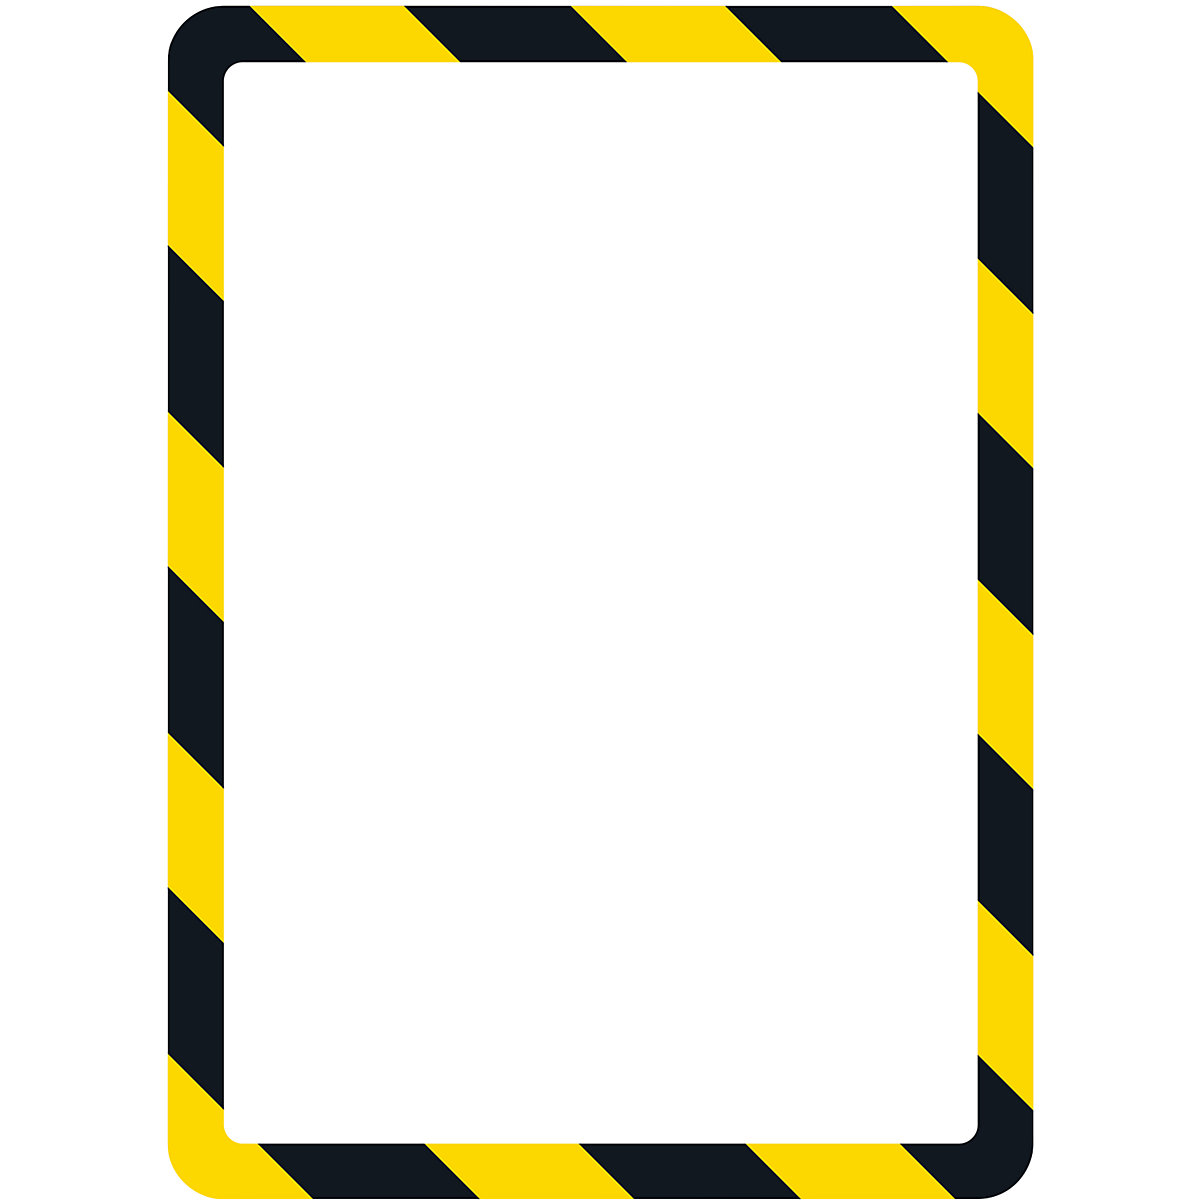 Bolsa transparente de apresentação A4 – Tarifold, com fecho magnético, amarela / preta, embalagem de 2 unid.-4